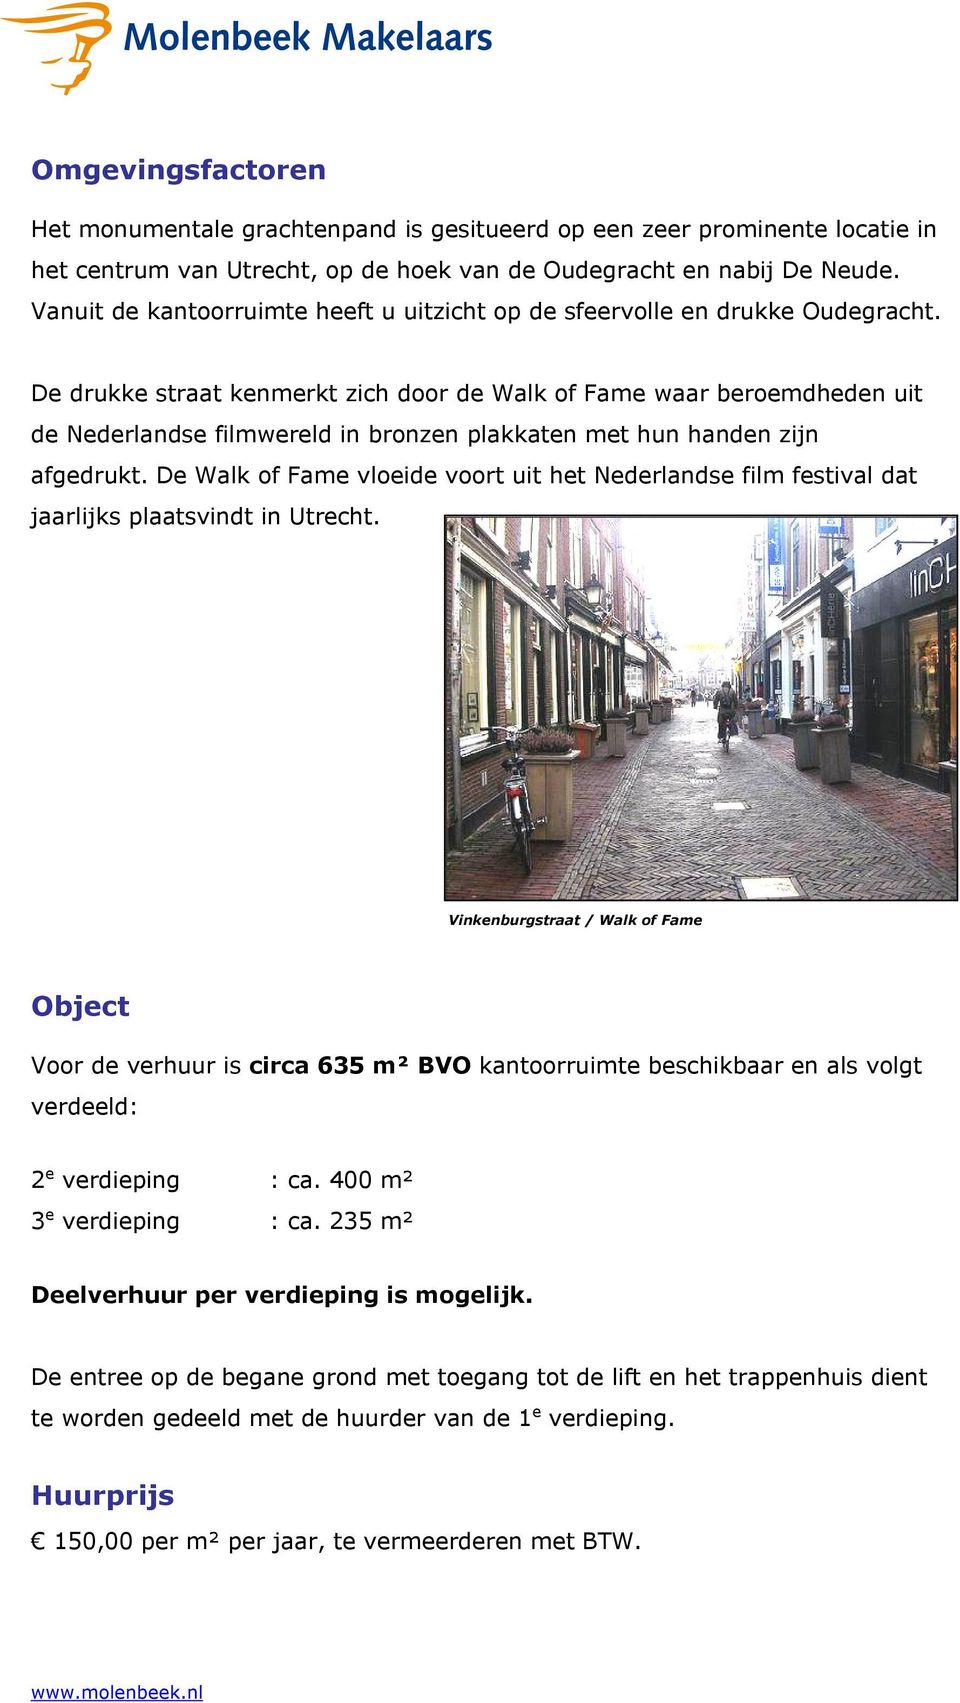 De drukke straat kenmerkt zich door de Walk of Fame waar beroemdheden uit de Nederlandse filmwereld in bronzen plakkaten met hun handen zijn afgedrukt.